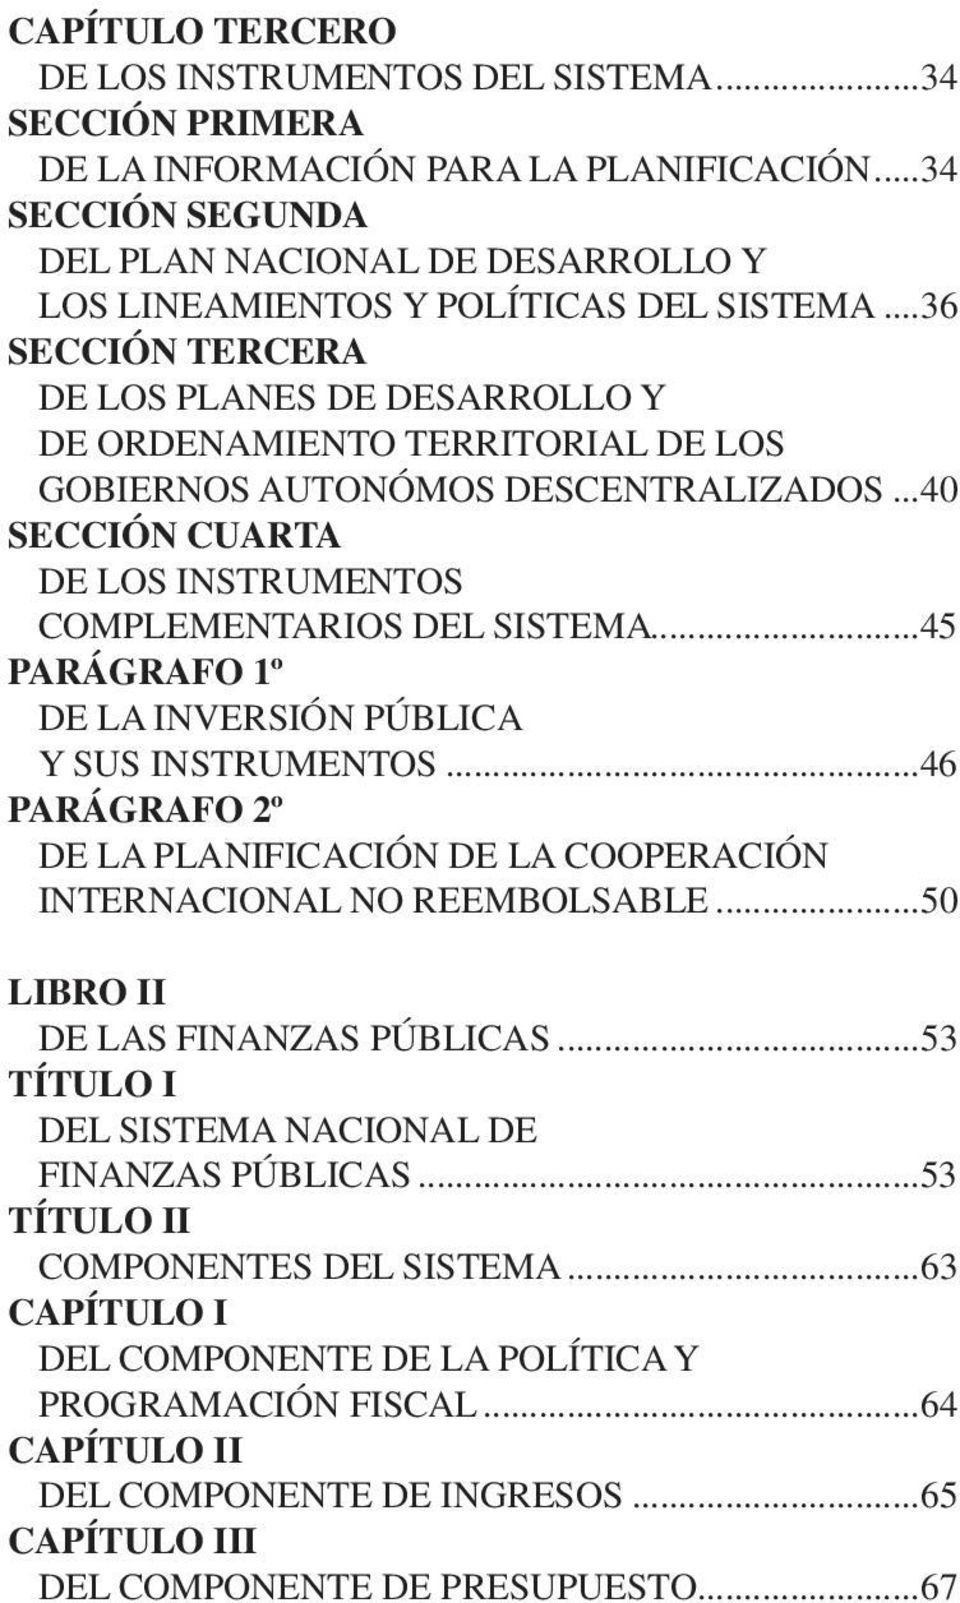 ..36 SECCIÓN TERCERA DE LOS PLANES DE DESARROLLO Y DE ORDENAMIENTO TERRITORIAL DE LOS GOBIERNOS AUTONÓMOS DESCENTRALIZADOS...40 SECCIÓN CUARTA DE LOS INSTRUMENTOS COMPLEMENTARIOS DEL SISTEMA.